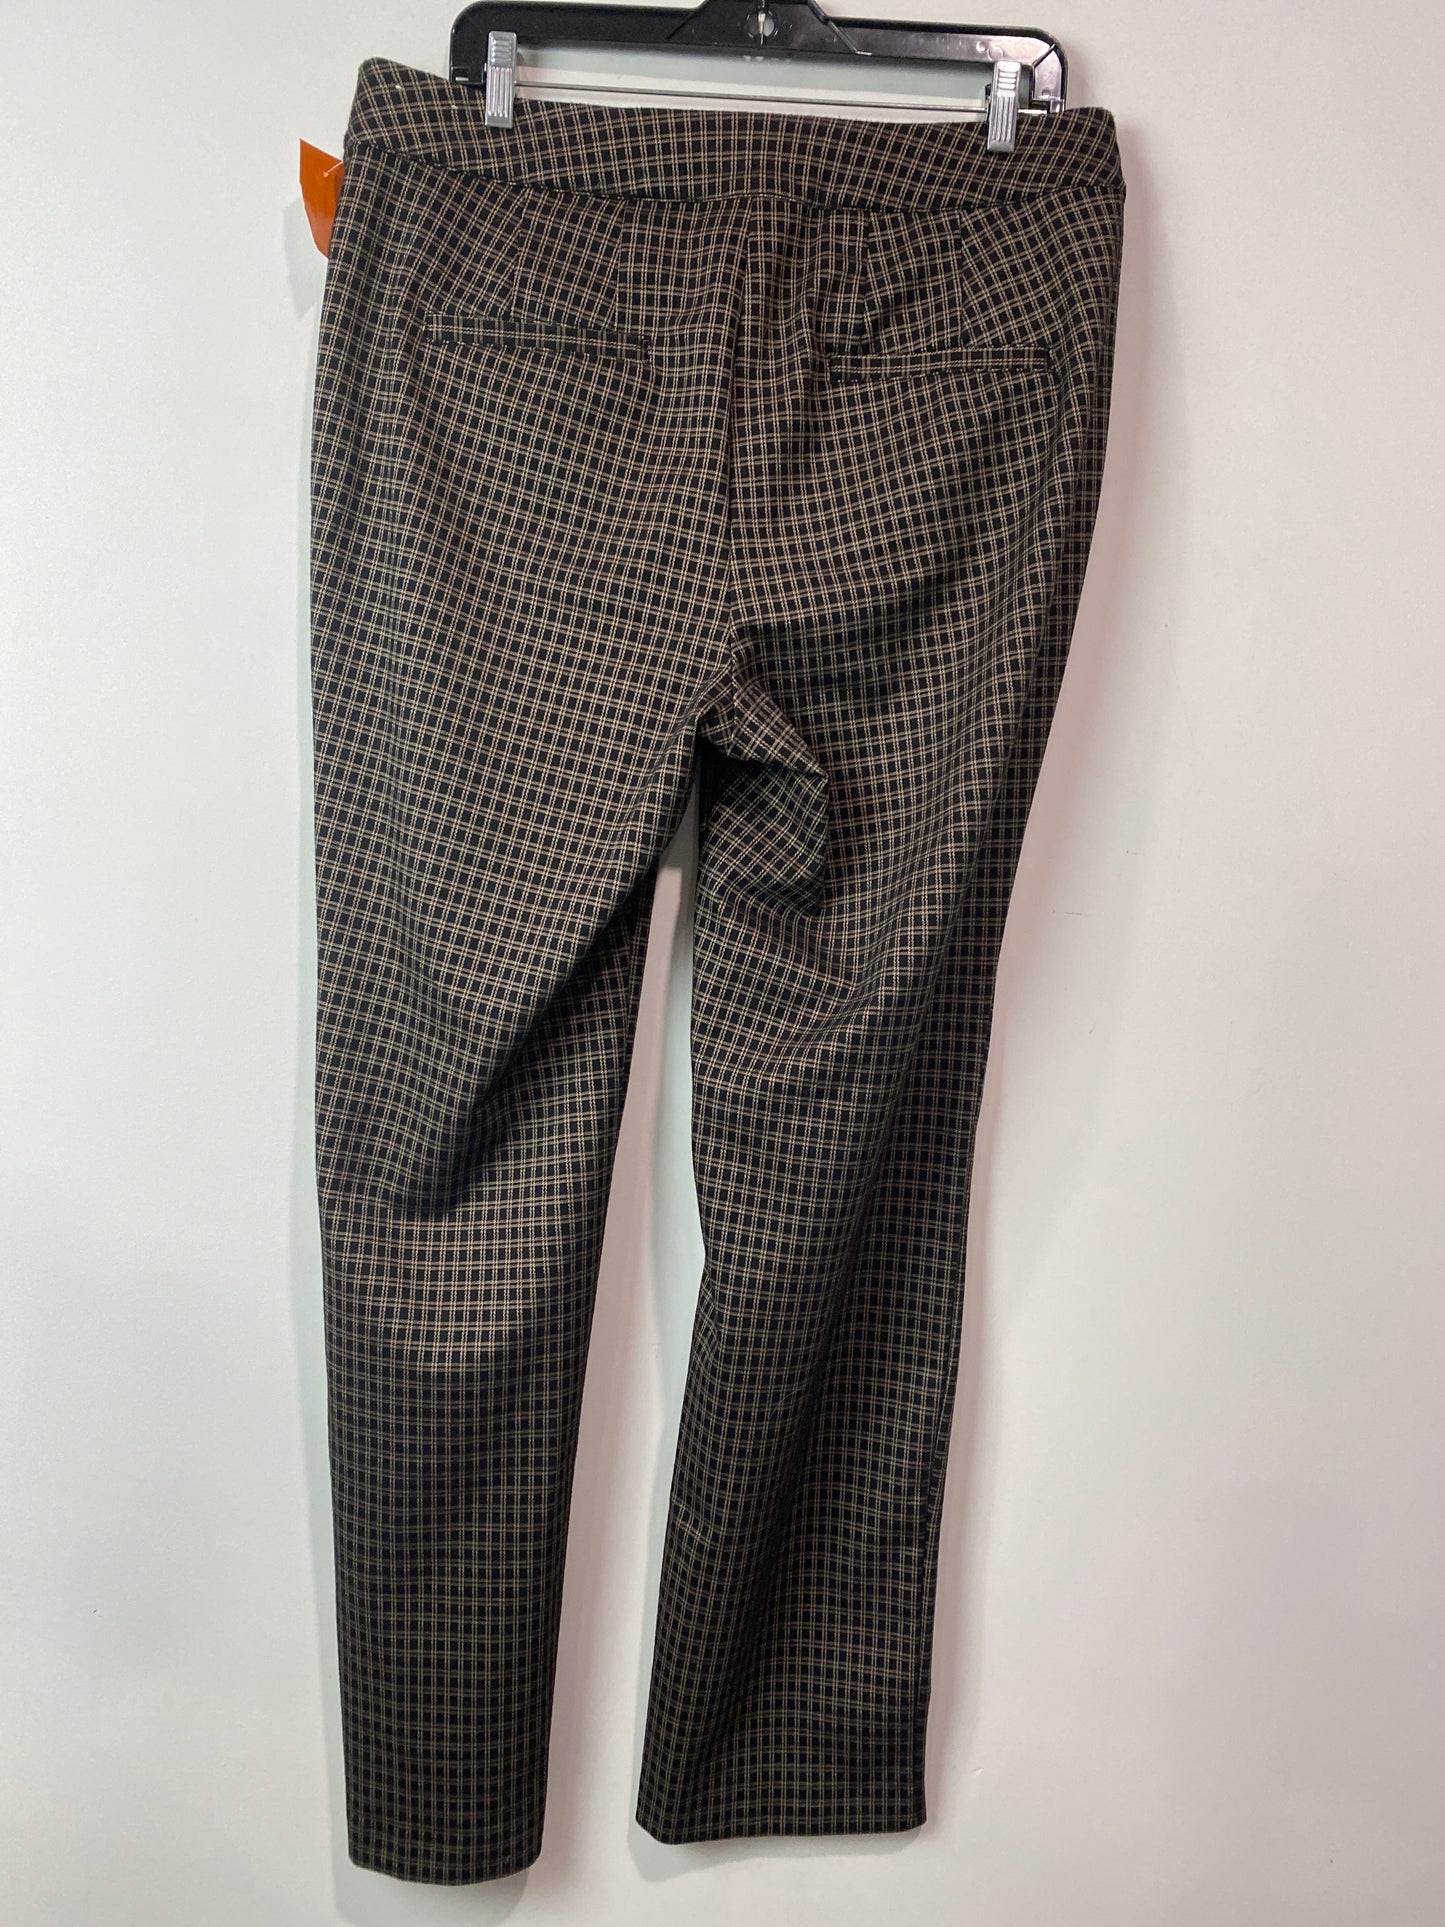 Pants Dress By Lane Bryant  Size: 14